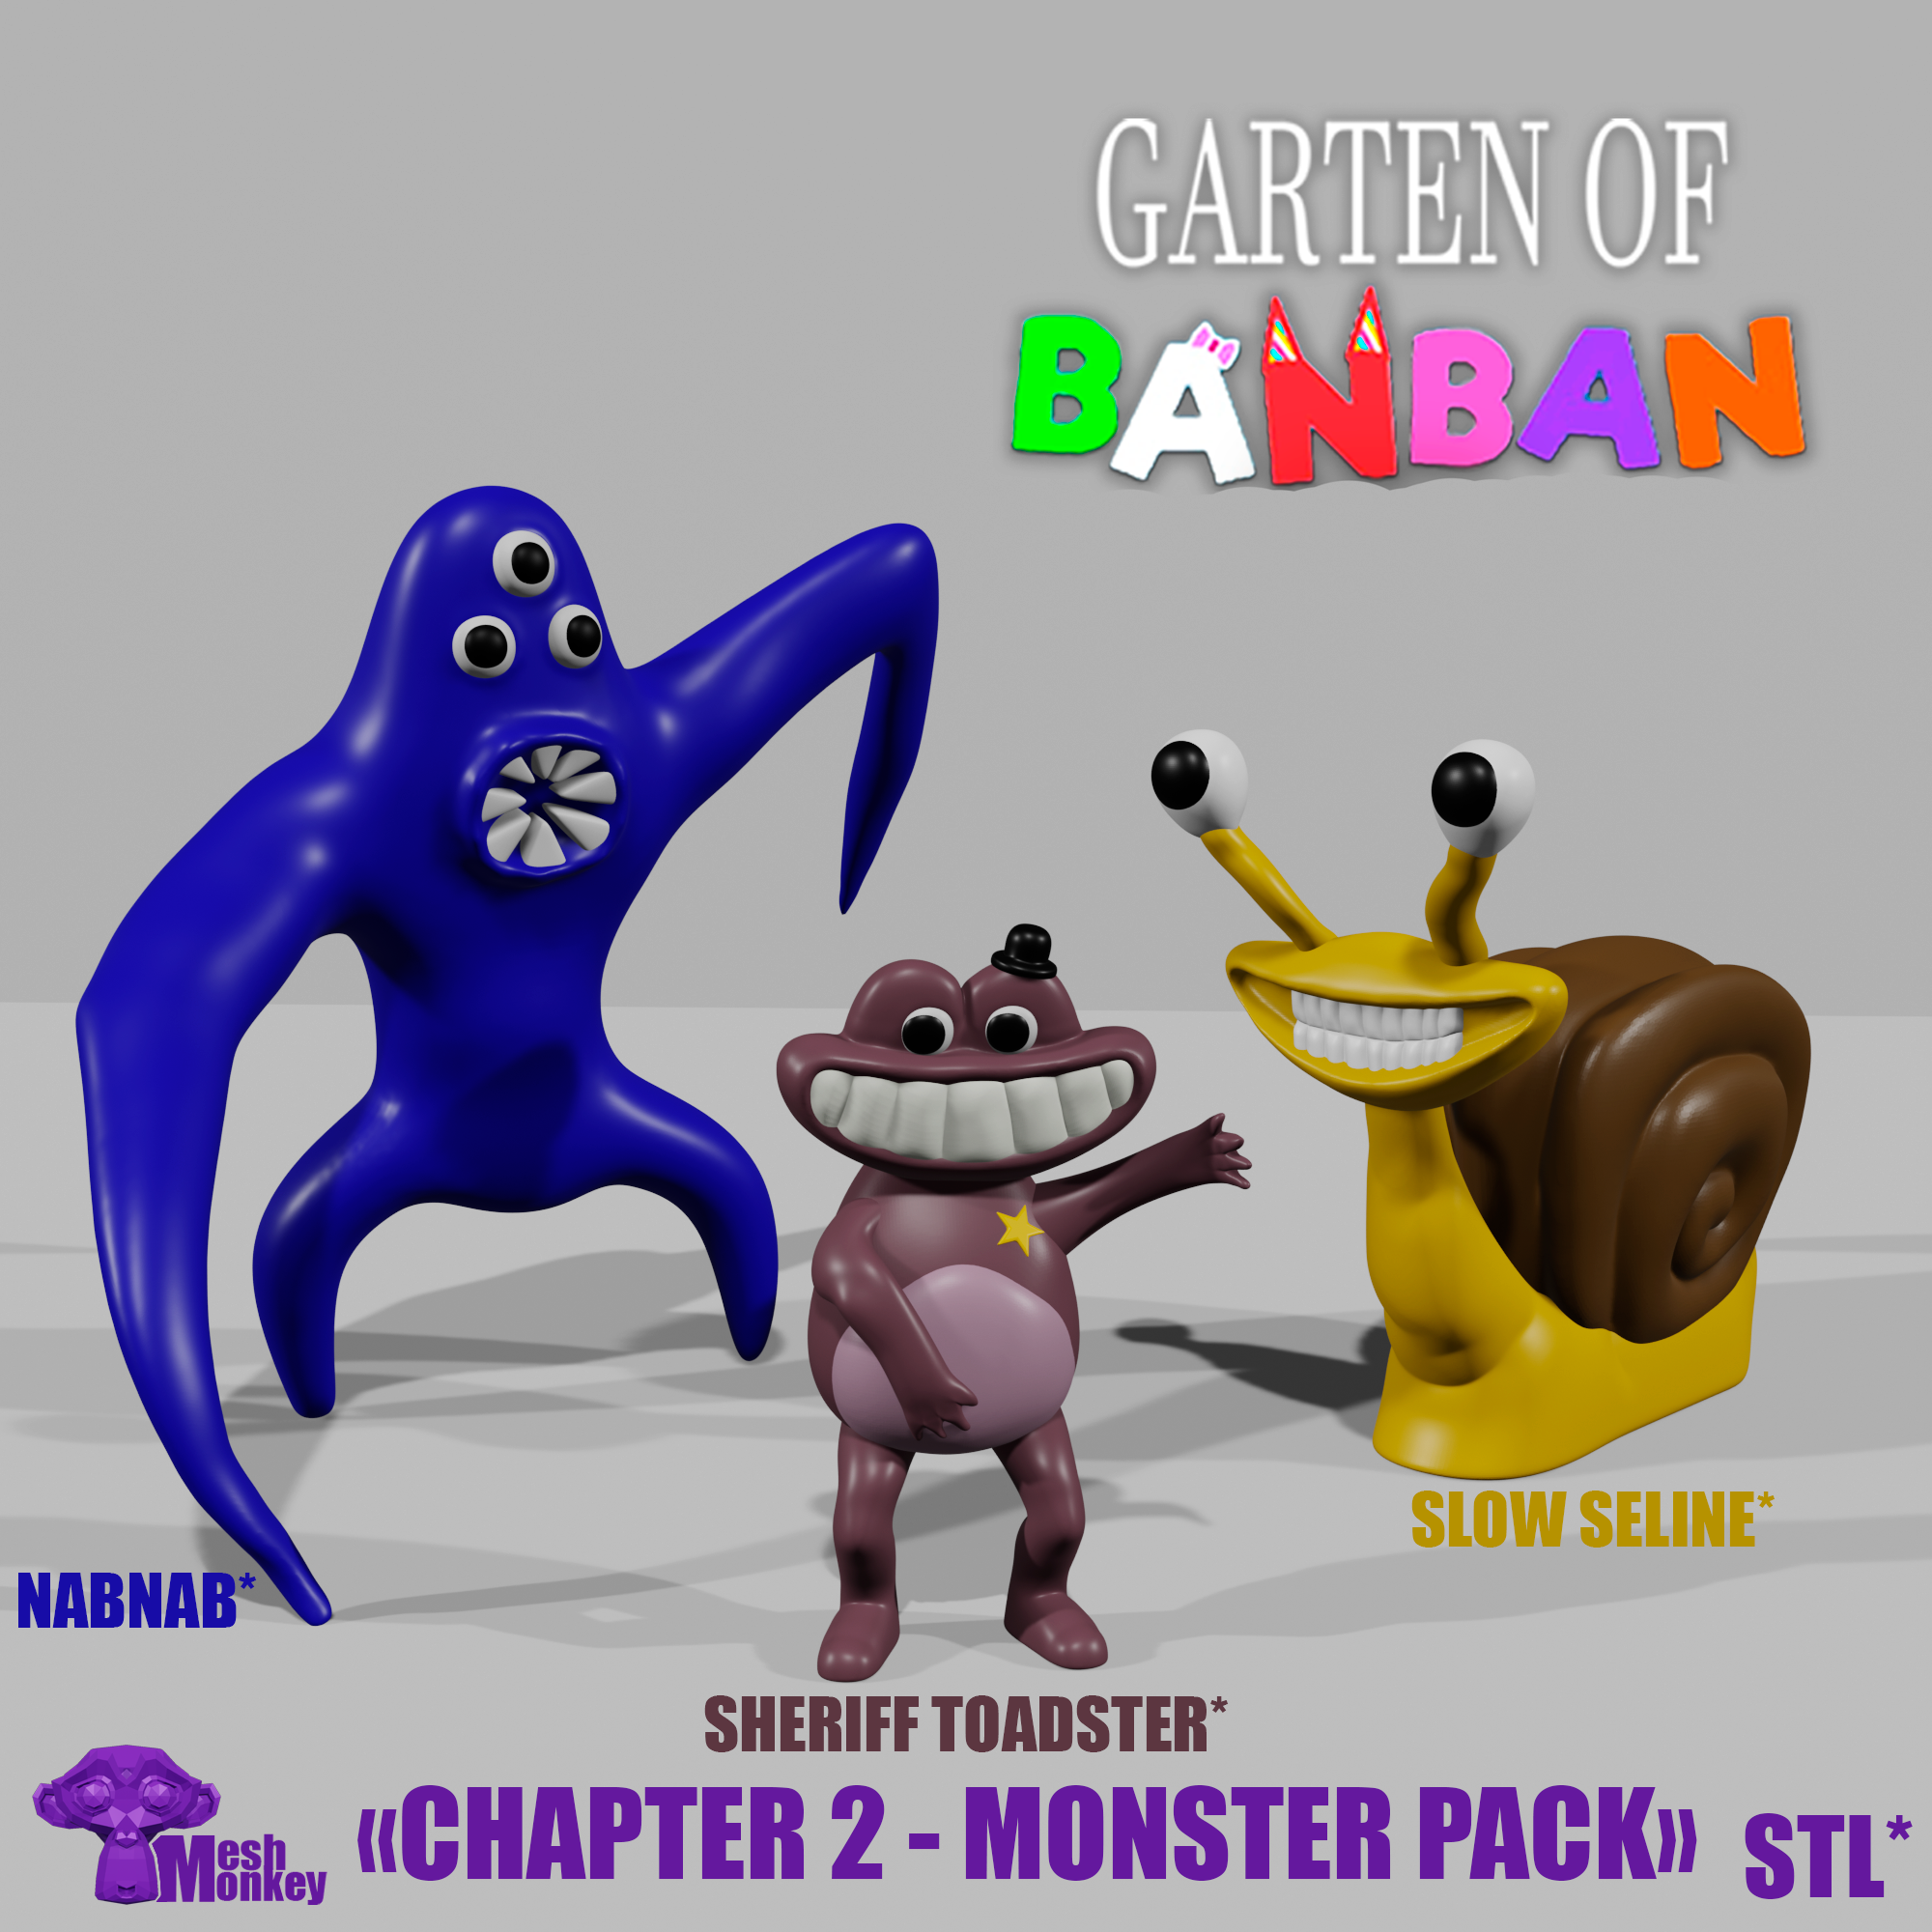 Garten of Banban 2 - Official Trailer 